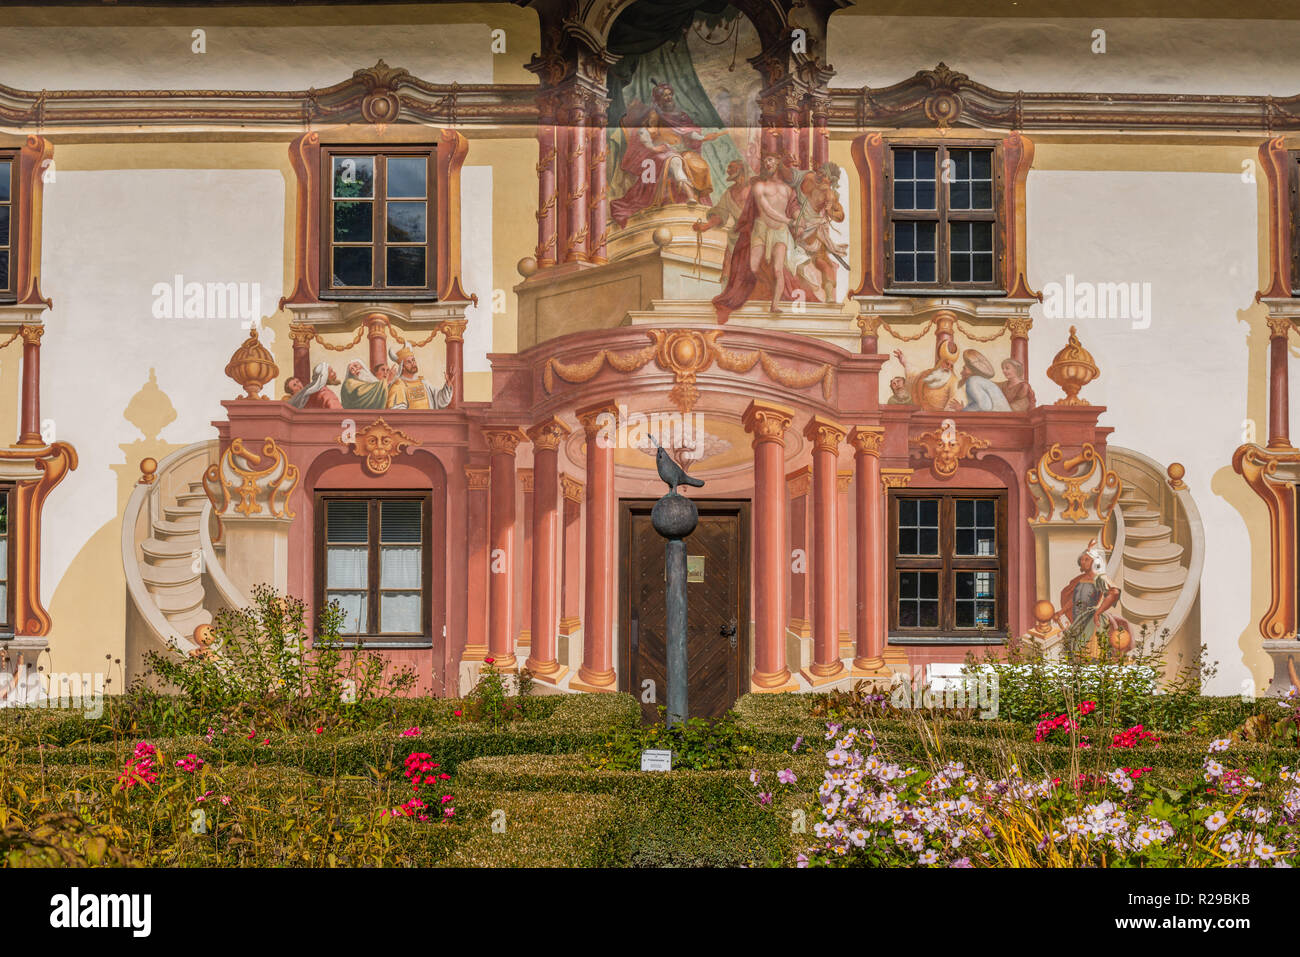 La célèbre maison de Pilate, 18e siècle, peint par Franz Seraph Zwinck, Oberammergau, SAPL Ammergau, Haute-Bavière, Bavaria, Germany, Europe Banque D'Images